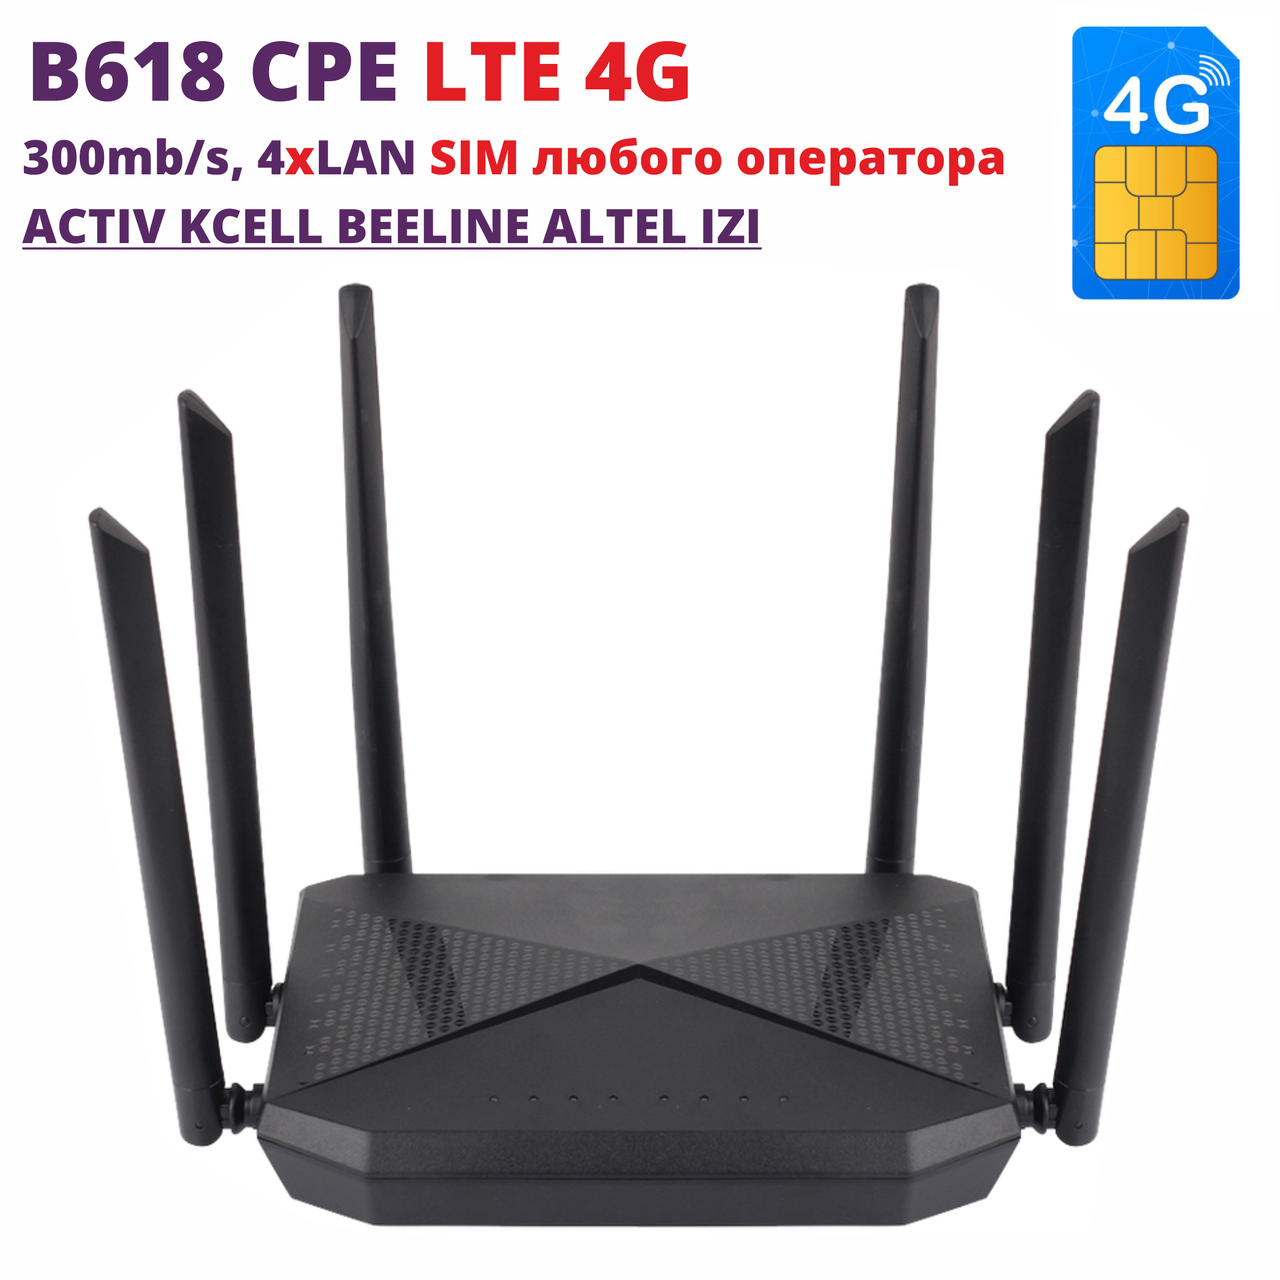 Модем роутер 4G 3G LTE Band 1/3/ WiFi B816  беспроводной 300 мбс SIM карты СИМ Tele2 Билайн Актив Kcell Altel